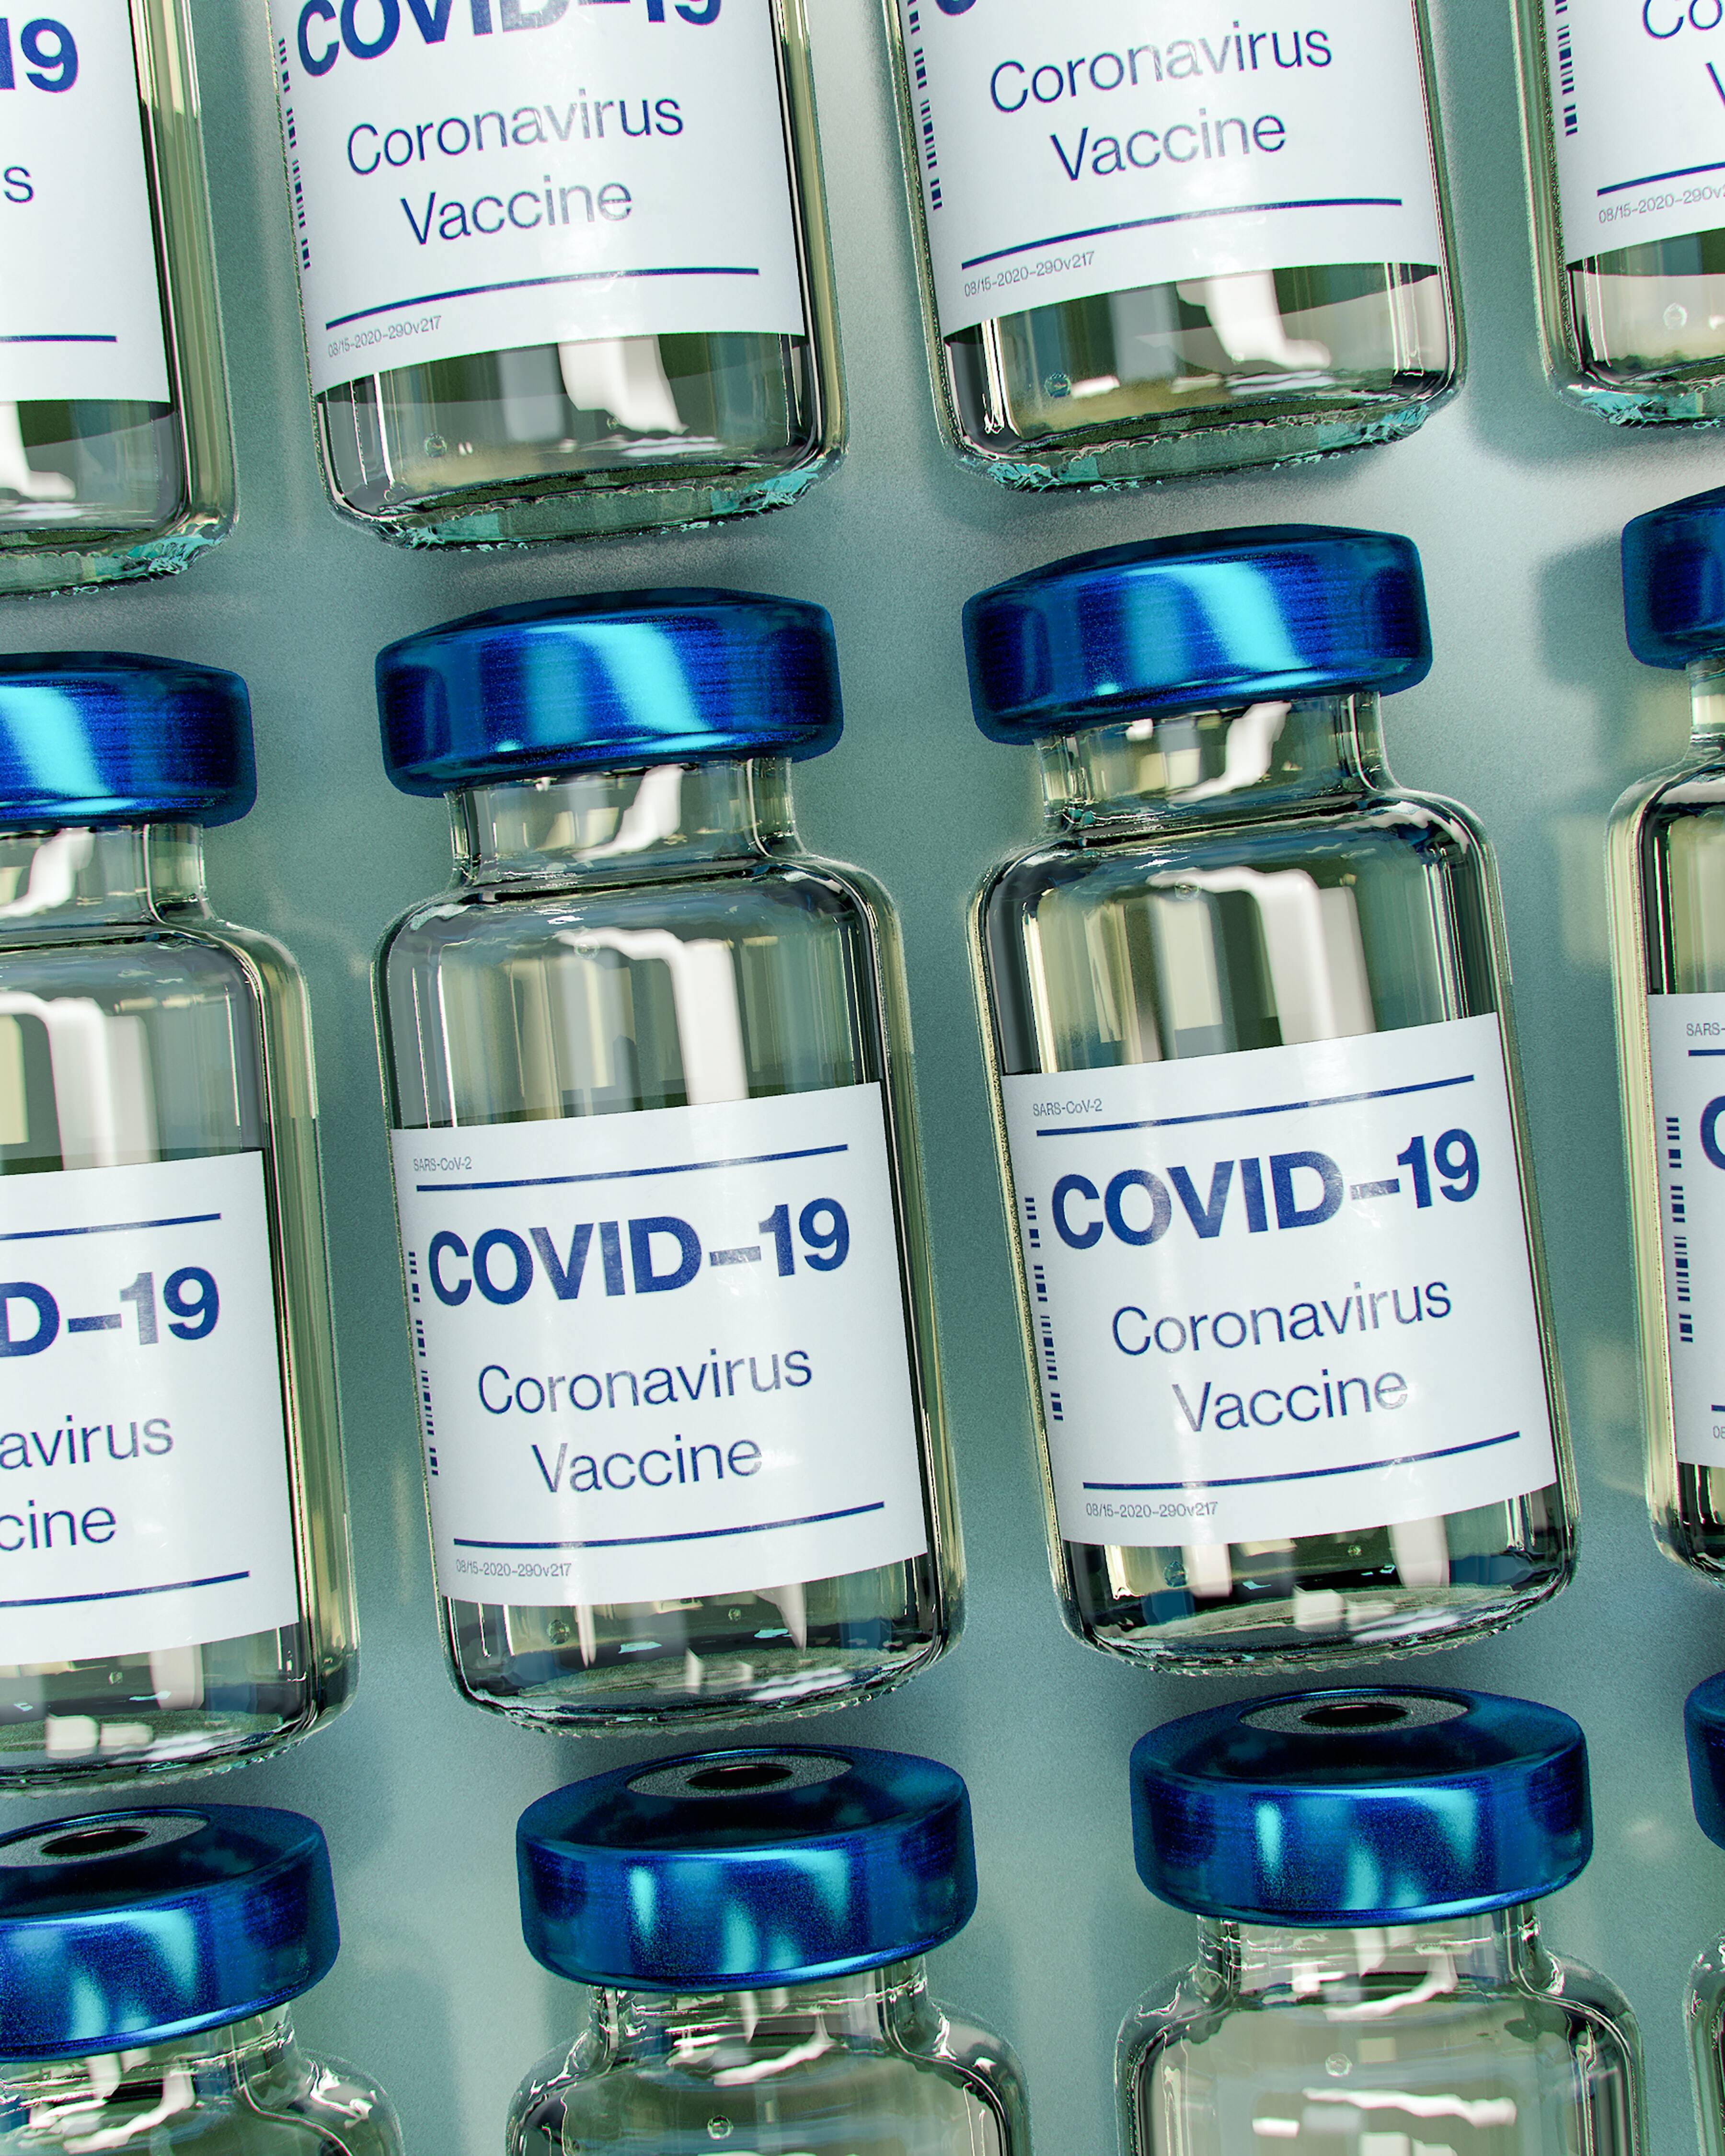 L'Hospital de Granollers lidera un estudi sobre possibles reaccions cutànies a la vacuna de la Covid-19